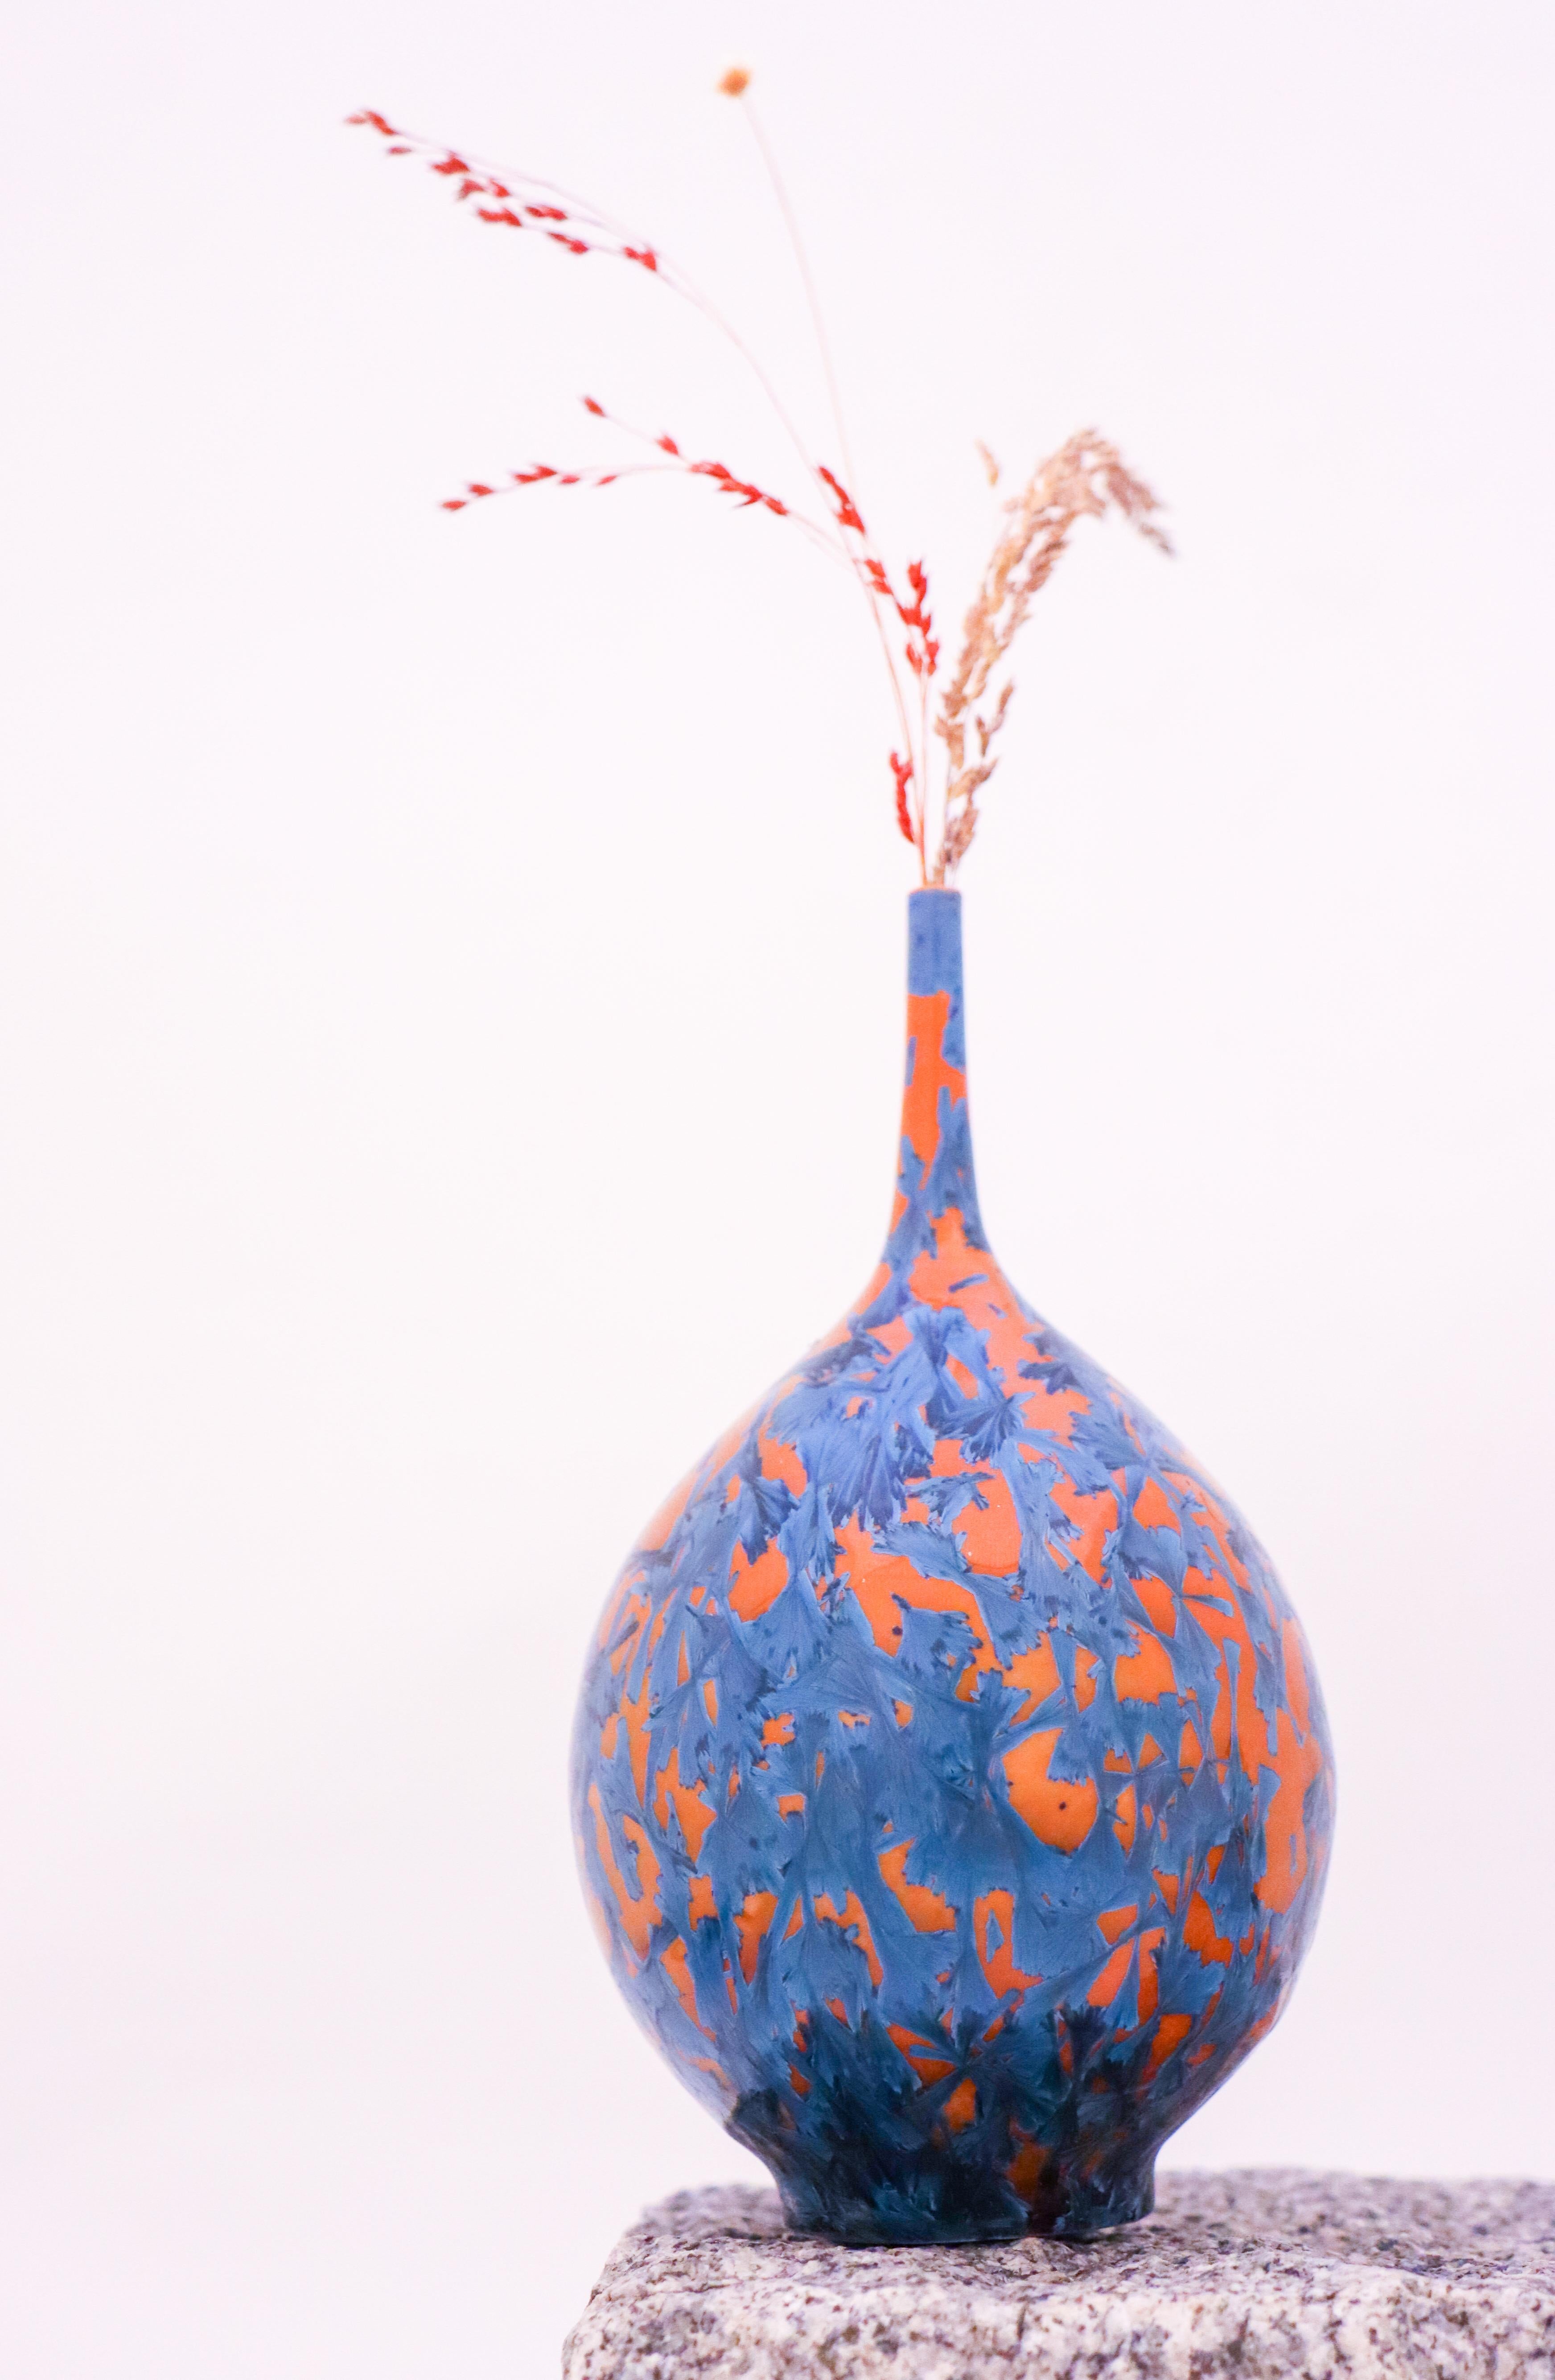 Ce vase remarquable d'Isak Isaksson est un véritable chef-d'œuvre de design contemporain. Fabriqué à la main en Suède, il présente un étonnant motif abstrait dans des tons orangés, fini par un glaçage cristallin brillant. Mesurant 16,5 cm de